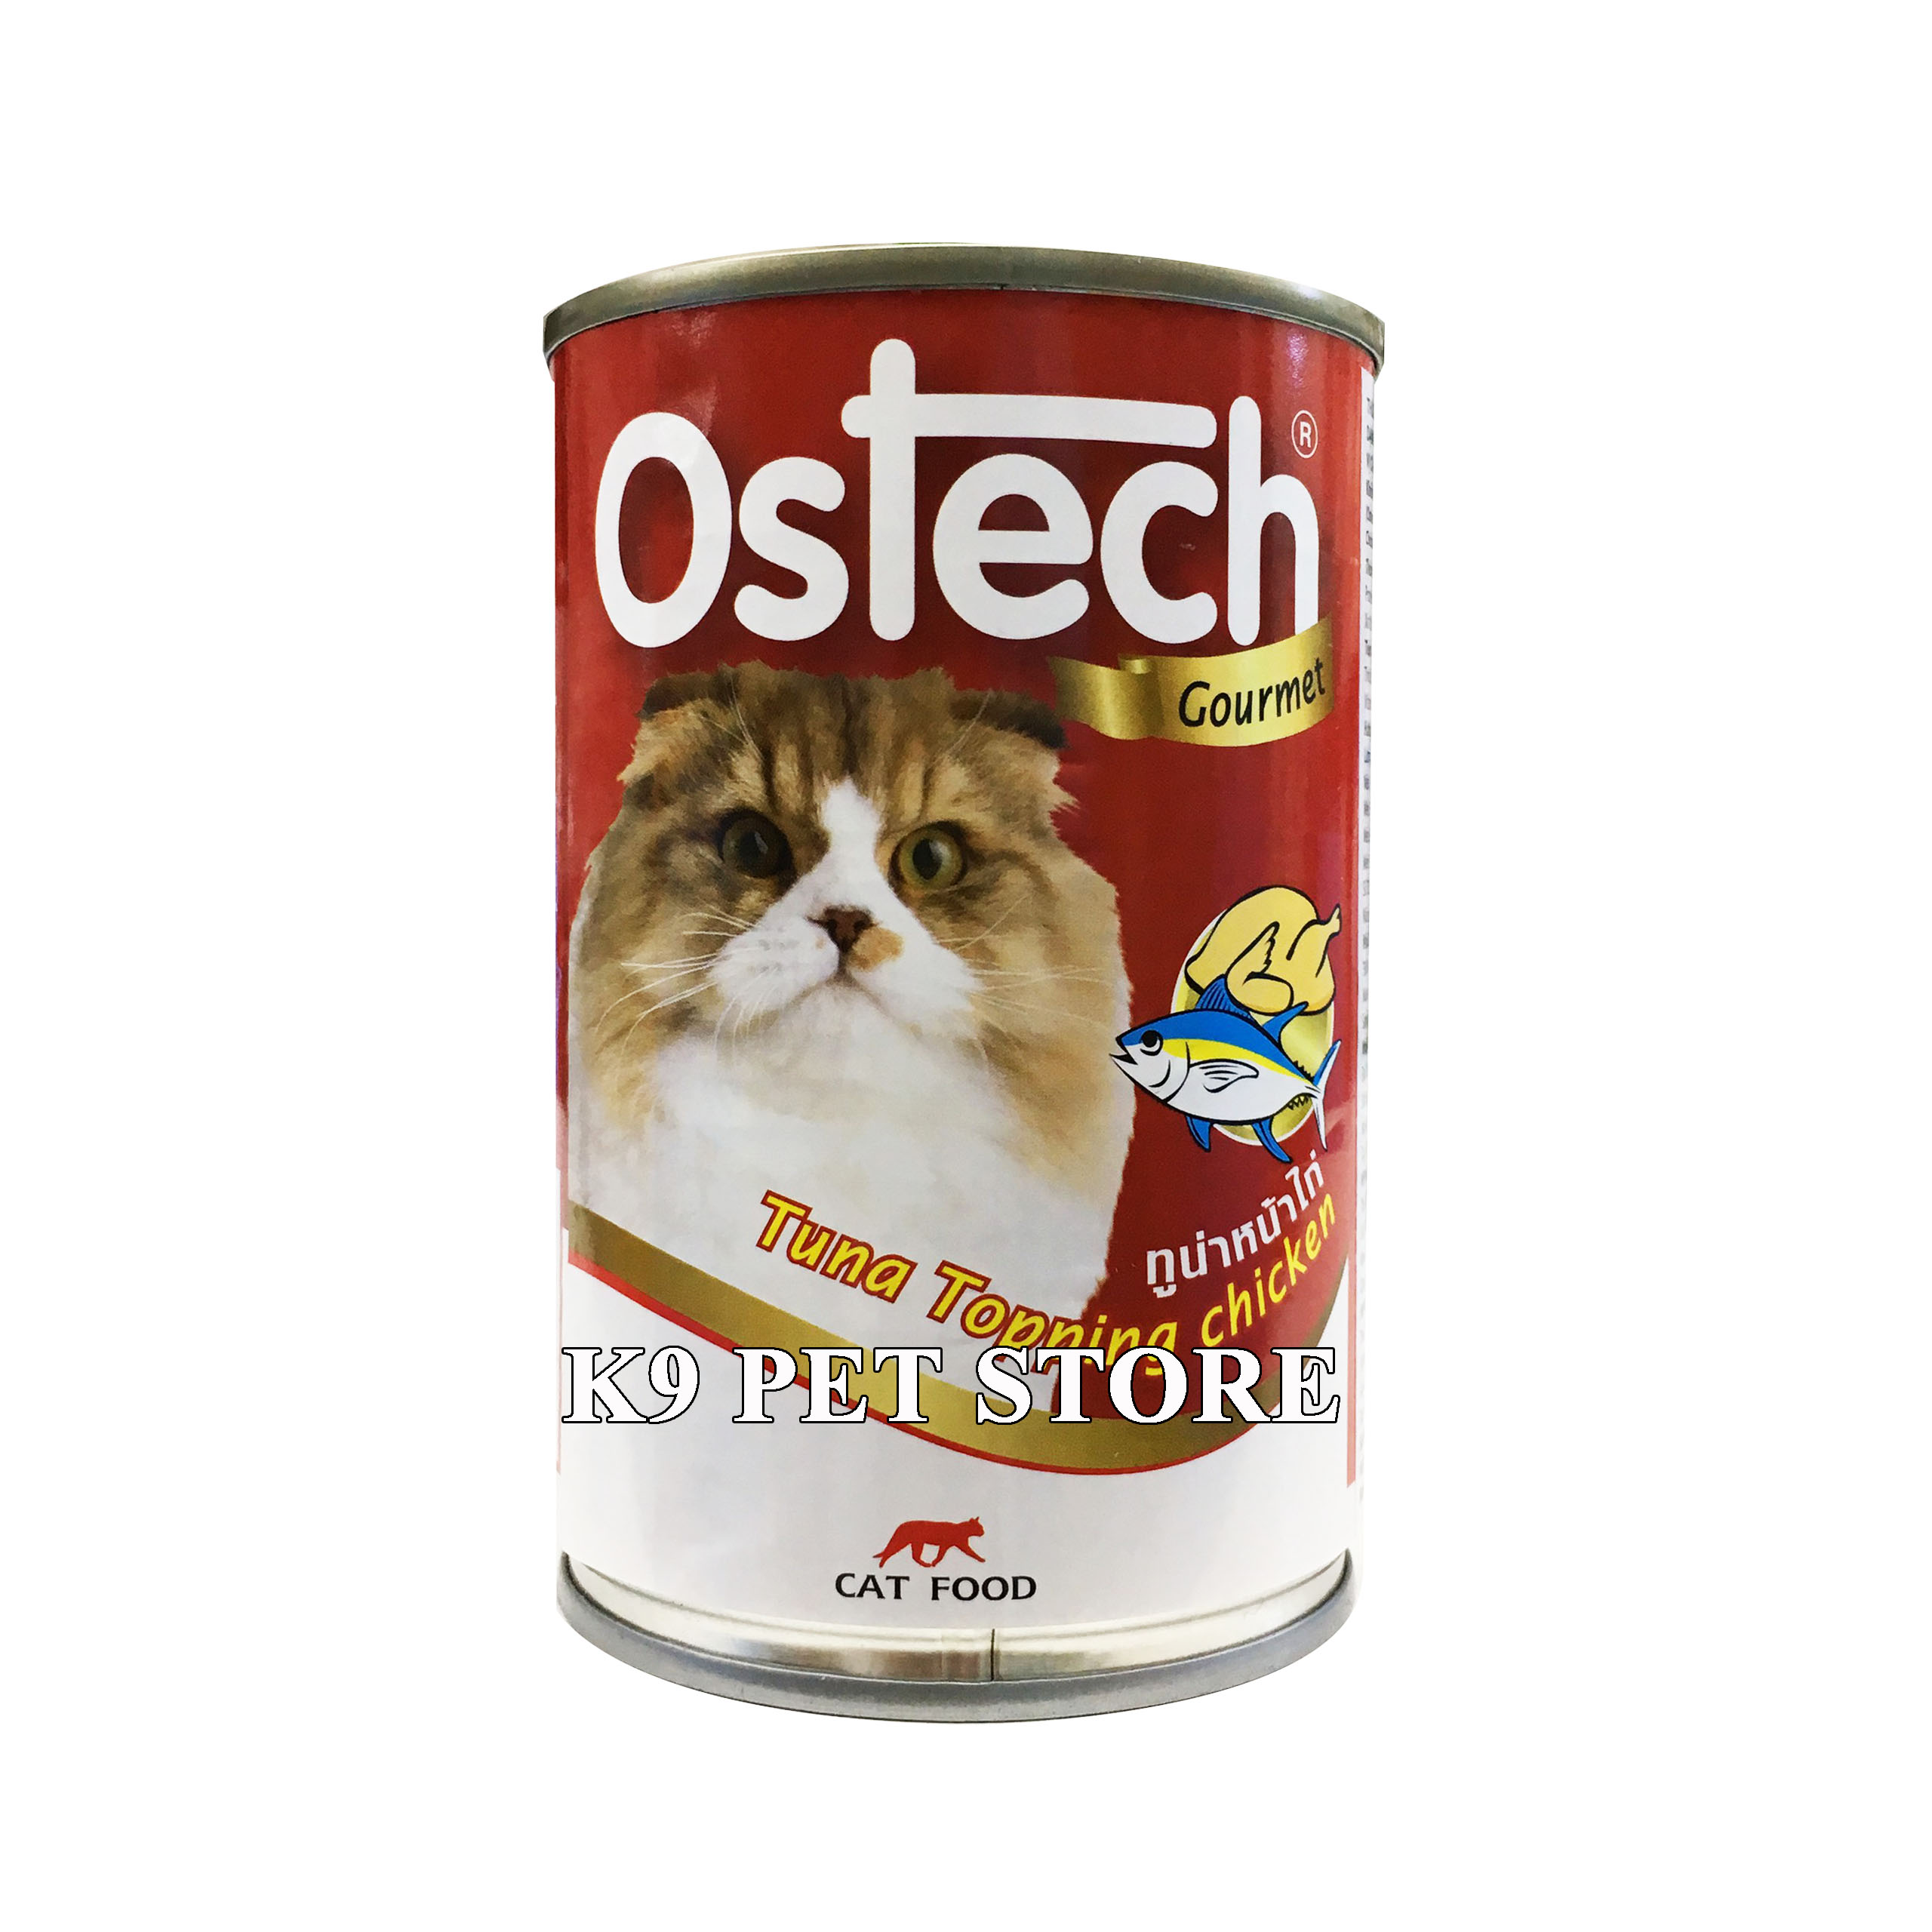 Pate lon cho mèo Ostech Gourmet vị Cá ngừ và Gà 400g